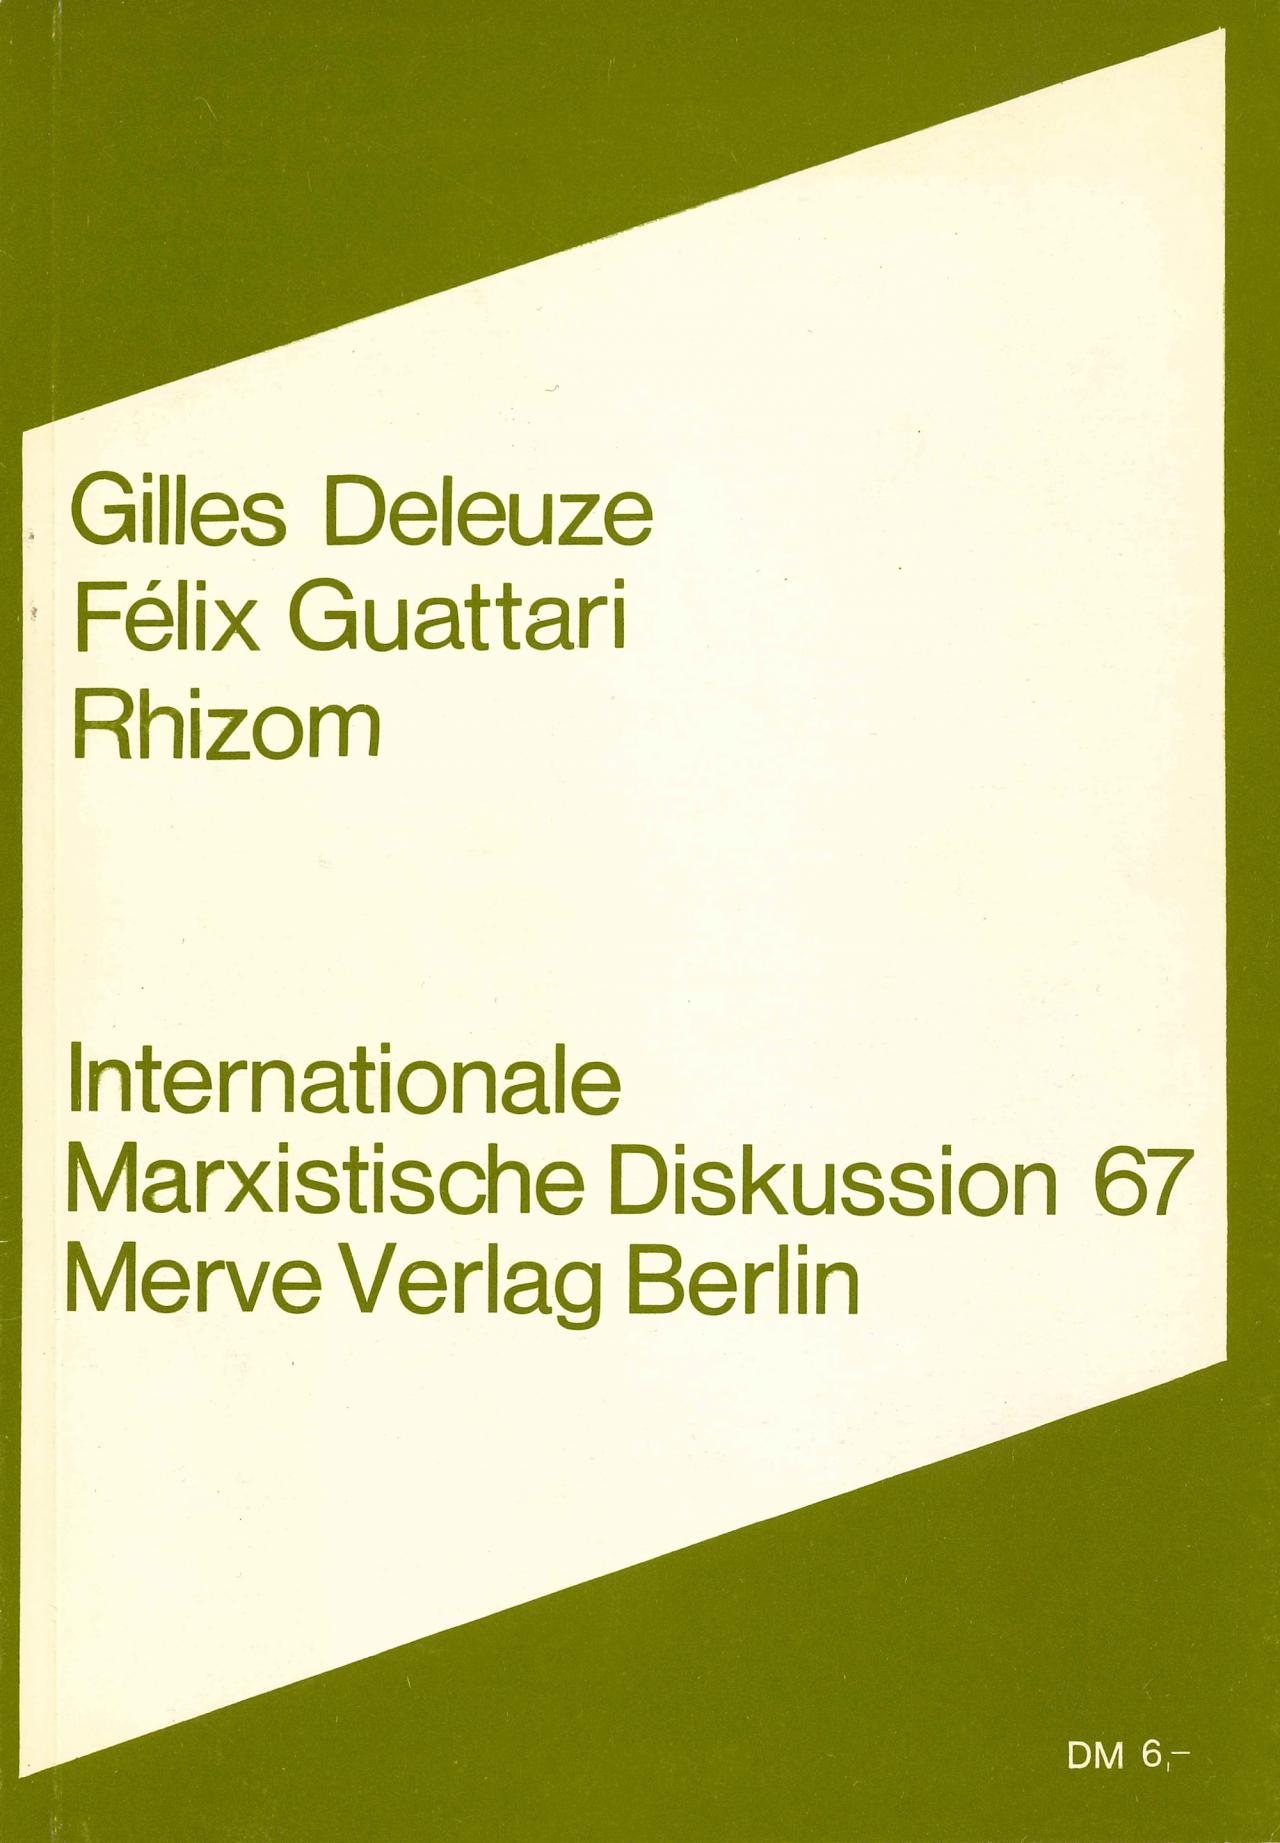 Gilles Deleuze, Félix Guattari: Rhizom, Berlin 1977.